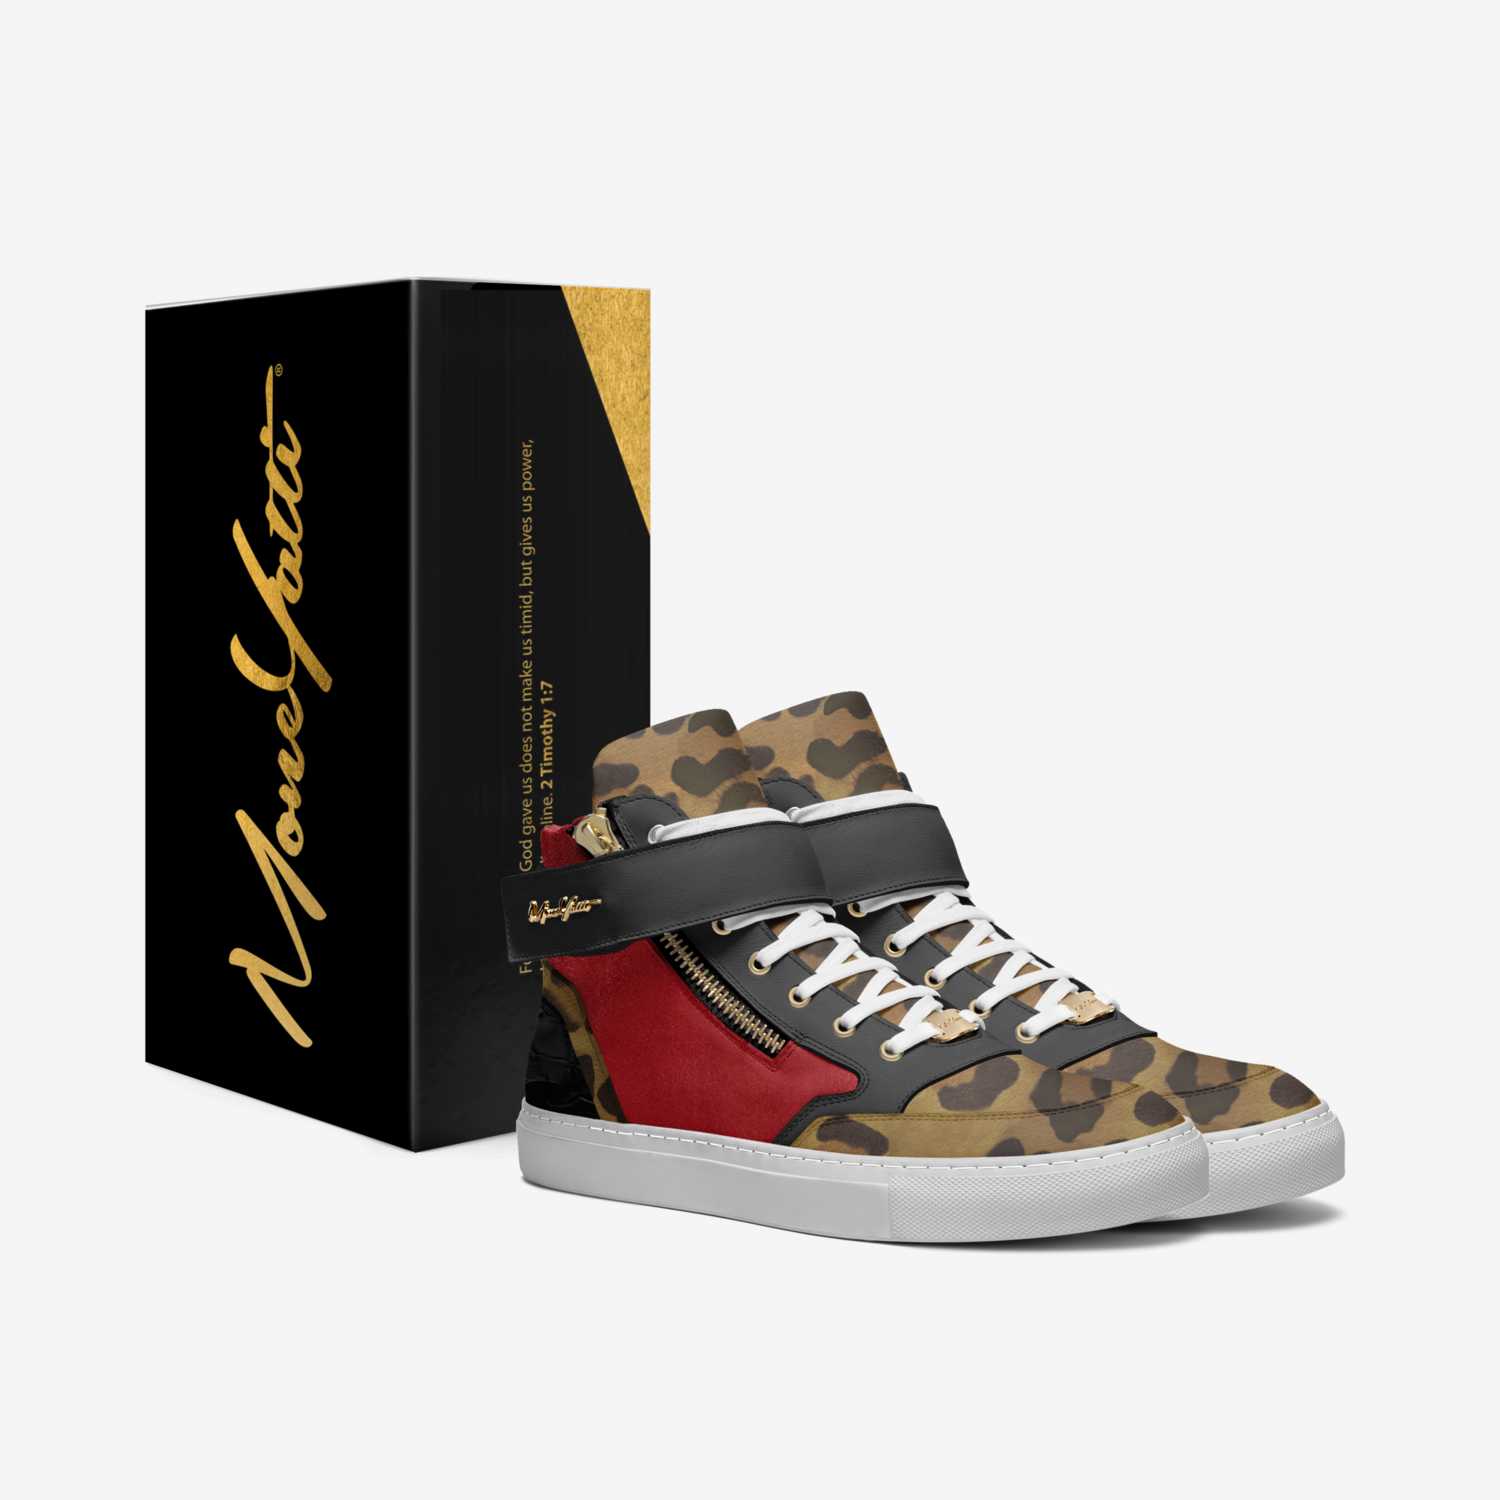 MONEYATTI G02 custom made in Italy shoes by Moneyatti Brand | Box view